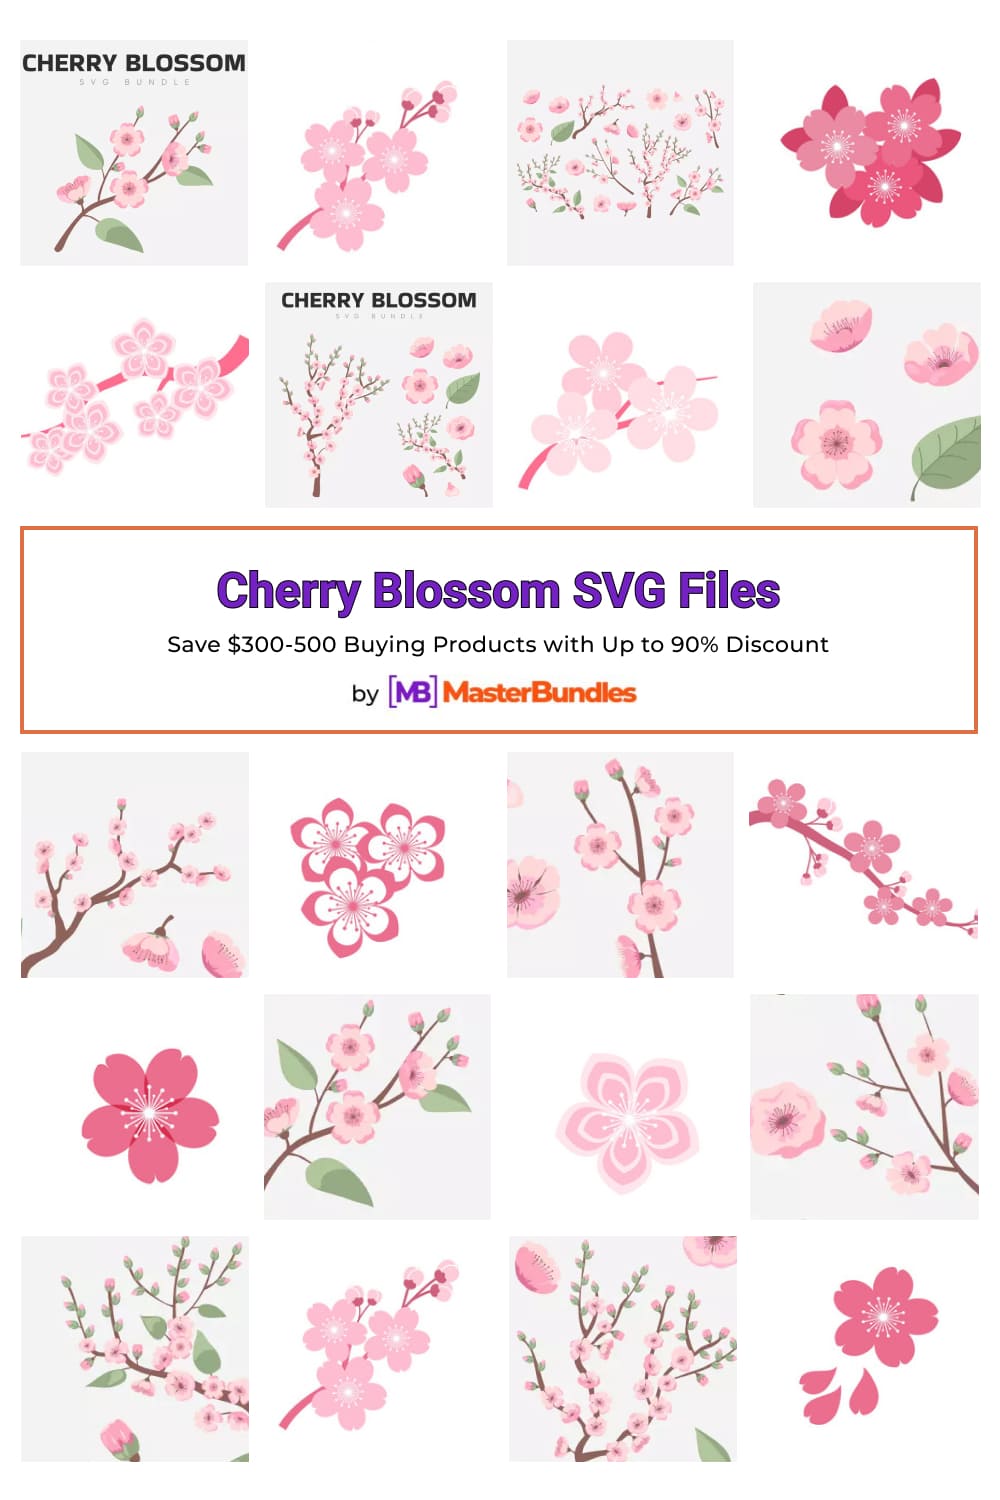 Cherry Blossom SVG Files for pinterest.